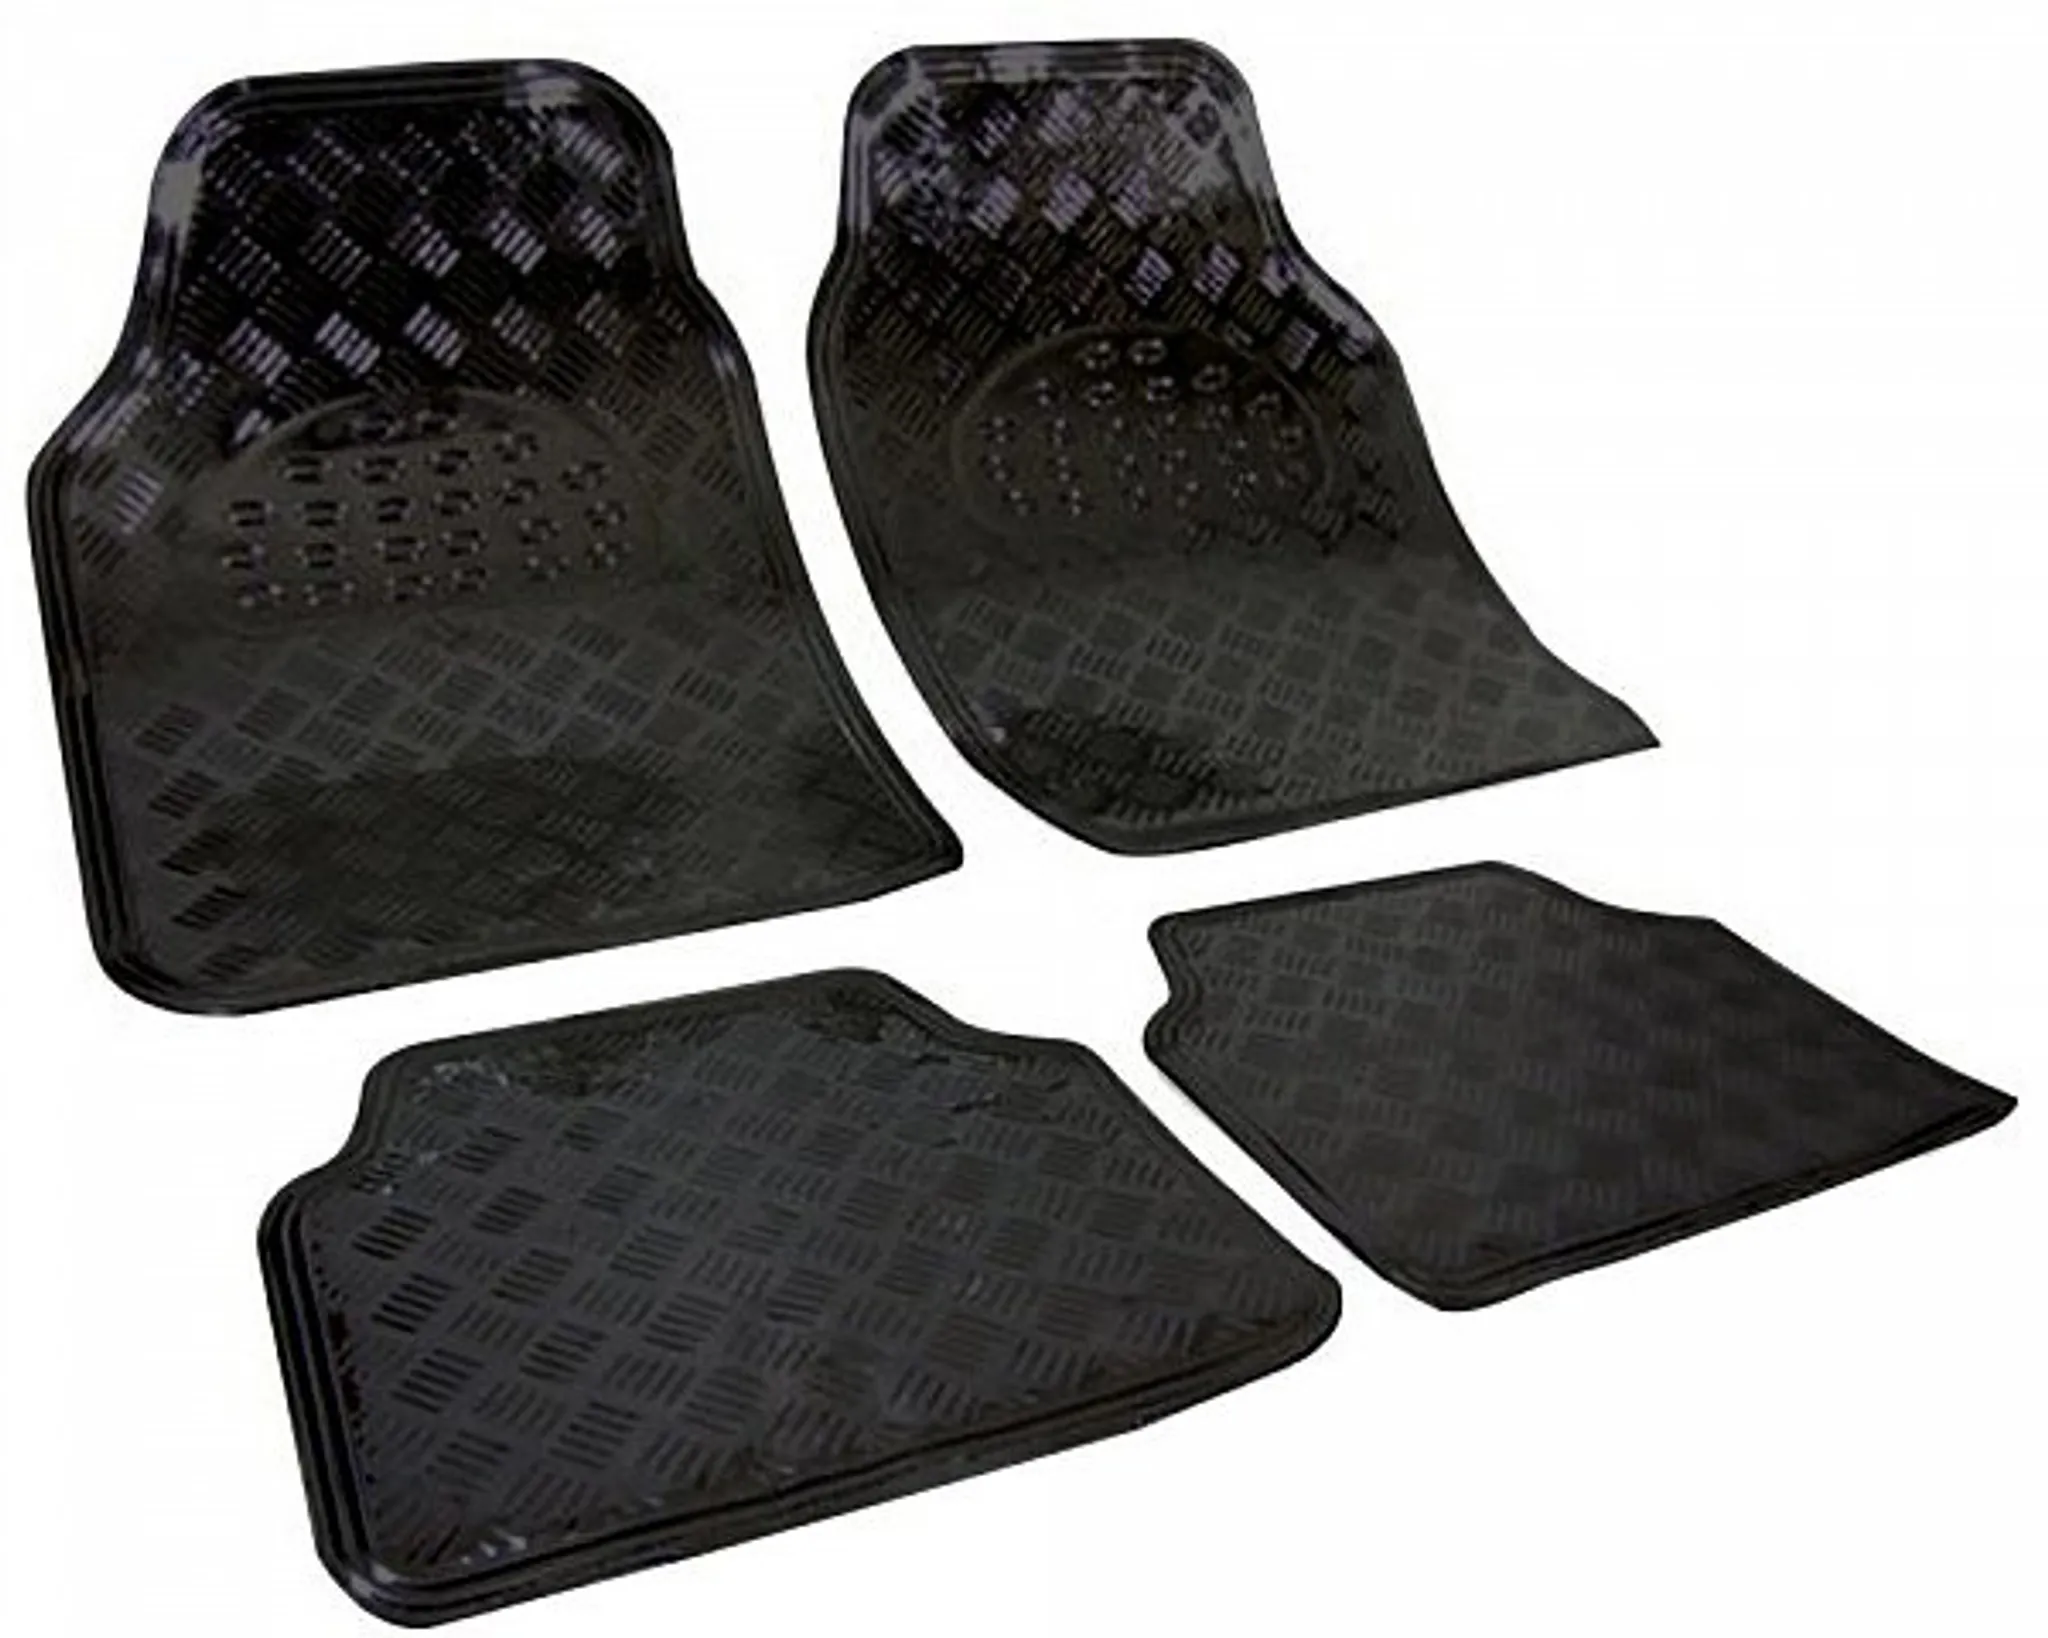 Auto-Teppich Matrix, Universal Fußmatten-Set 4-teilig rot, Auto-Teppich  Matrix, Universal Fußmatten-Set 4-teilig rot, Universal Textil Fußmatten, Textil Fußmatten, Automatten & Teppiche